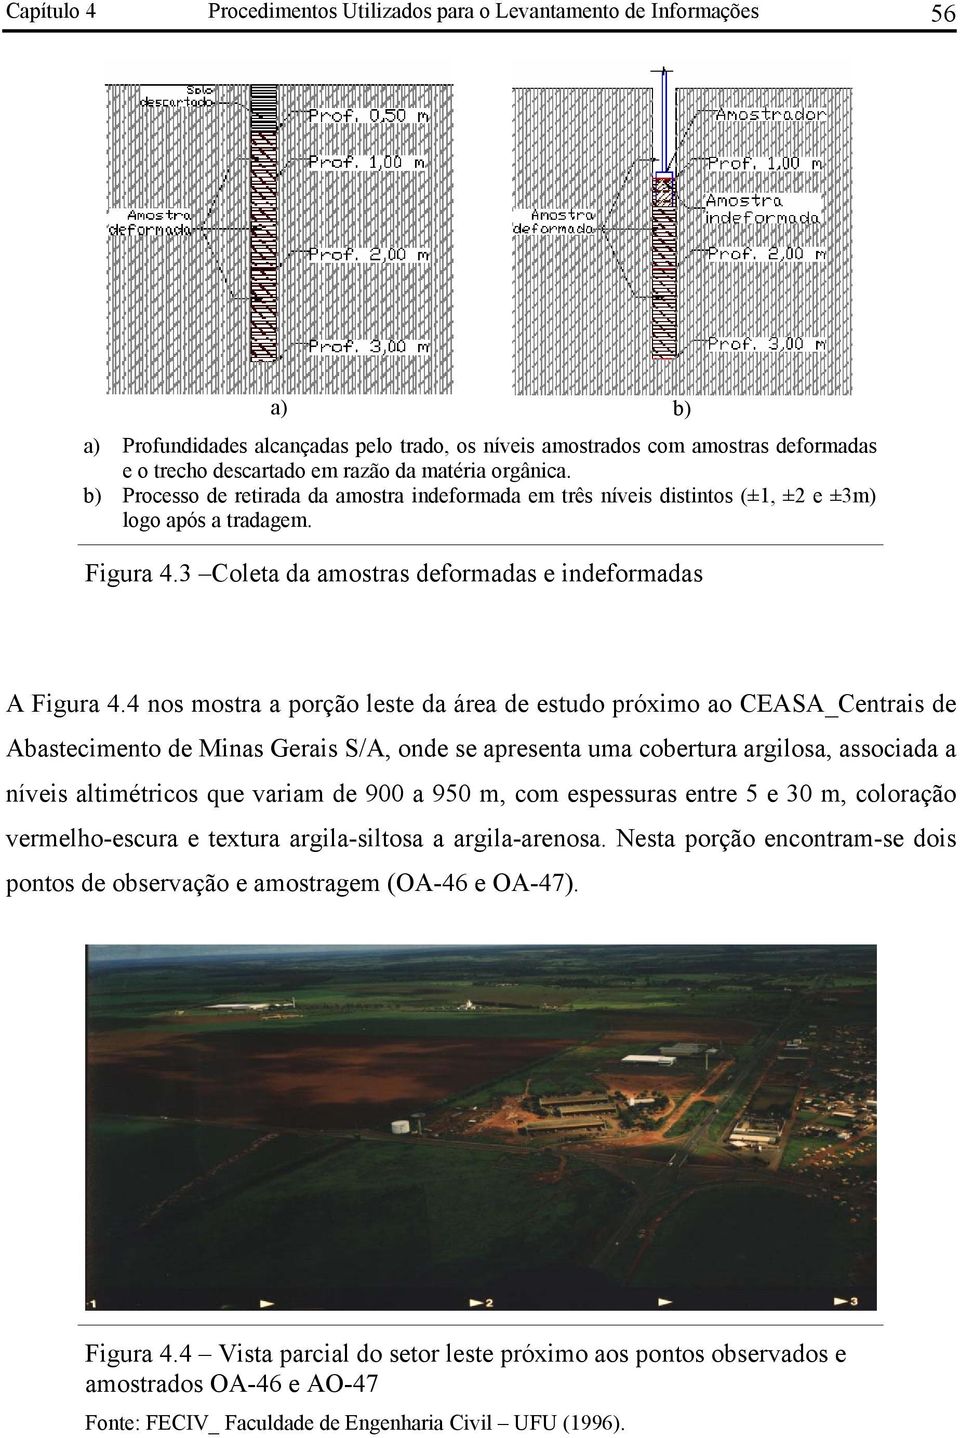 4 nos mostra a porção leste da área de estudo próximo ao CEASA_Centrais de Abastecimento de Minas Gerais S/A, onde se apresenta uma cobertura argilosa, associada a níveis altimétricos que variam de